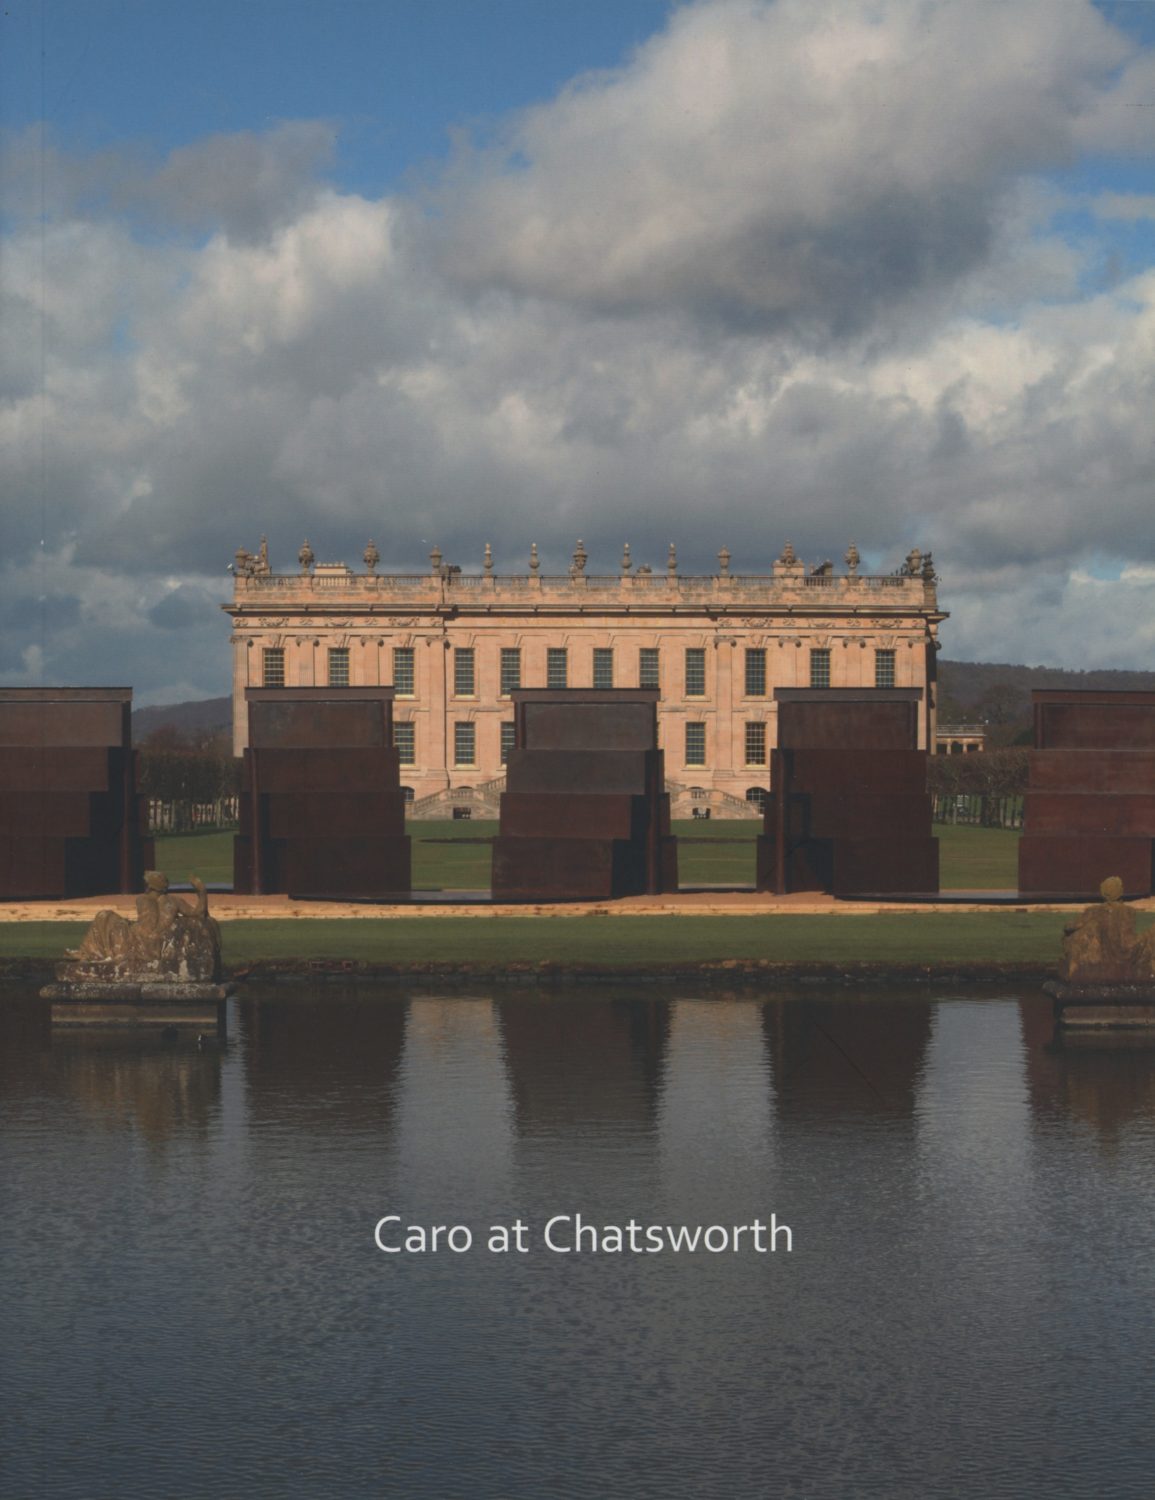 Caro at Chatsworth